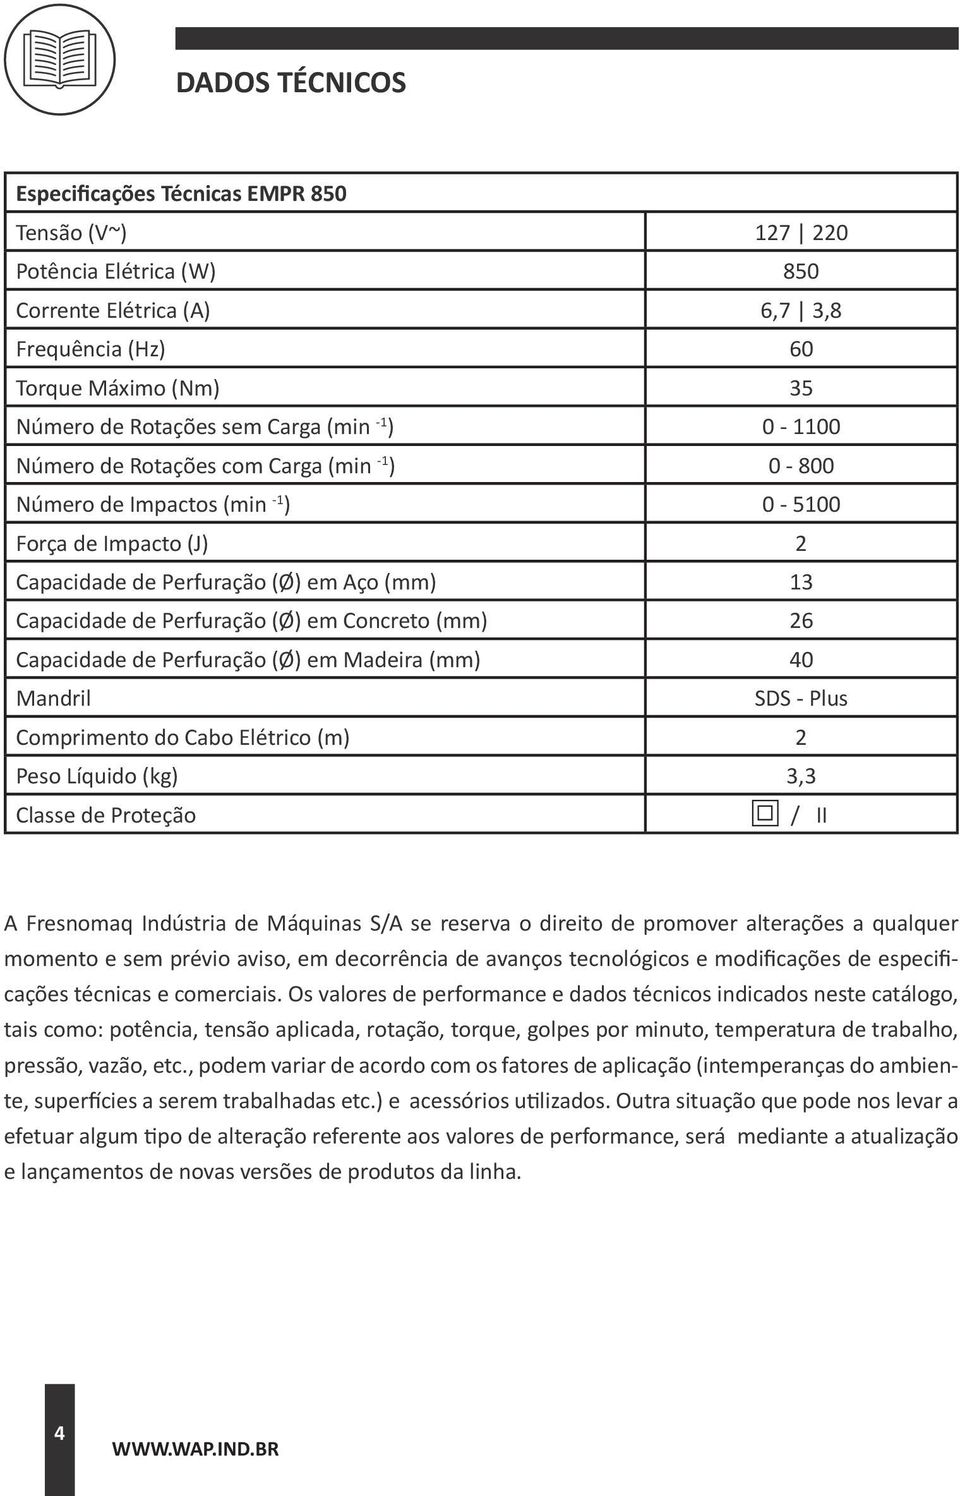 Concreto (mm) 26 Capacidade de Perfuração (Ø) em Madeira (mm) 40 Mandril SDS - Plus Comprimento do Cabo Elétrico (m) 2 Peso Líquido (kg) 3,3 Classe de Proteção / II A Fresnomaq Indústria de Máquinas